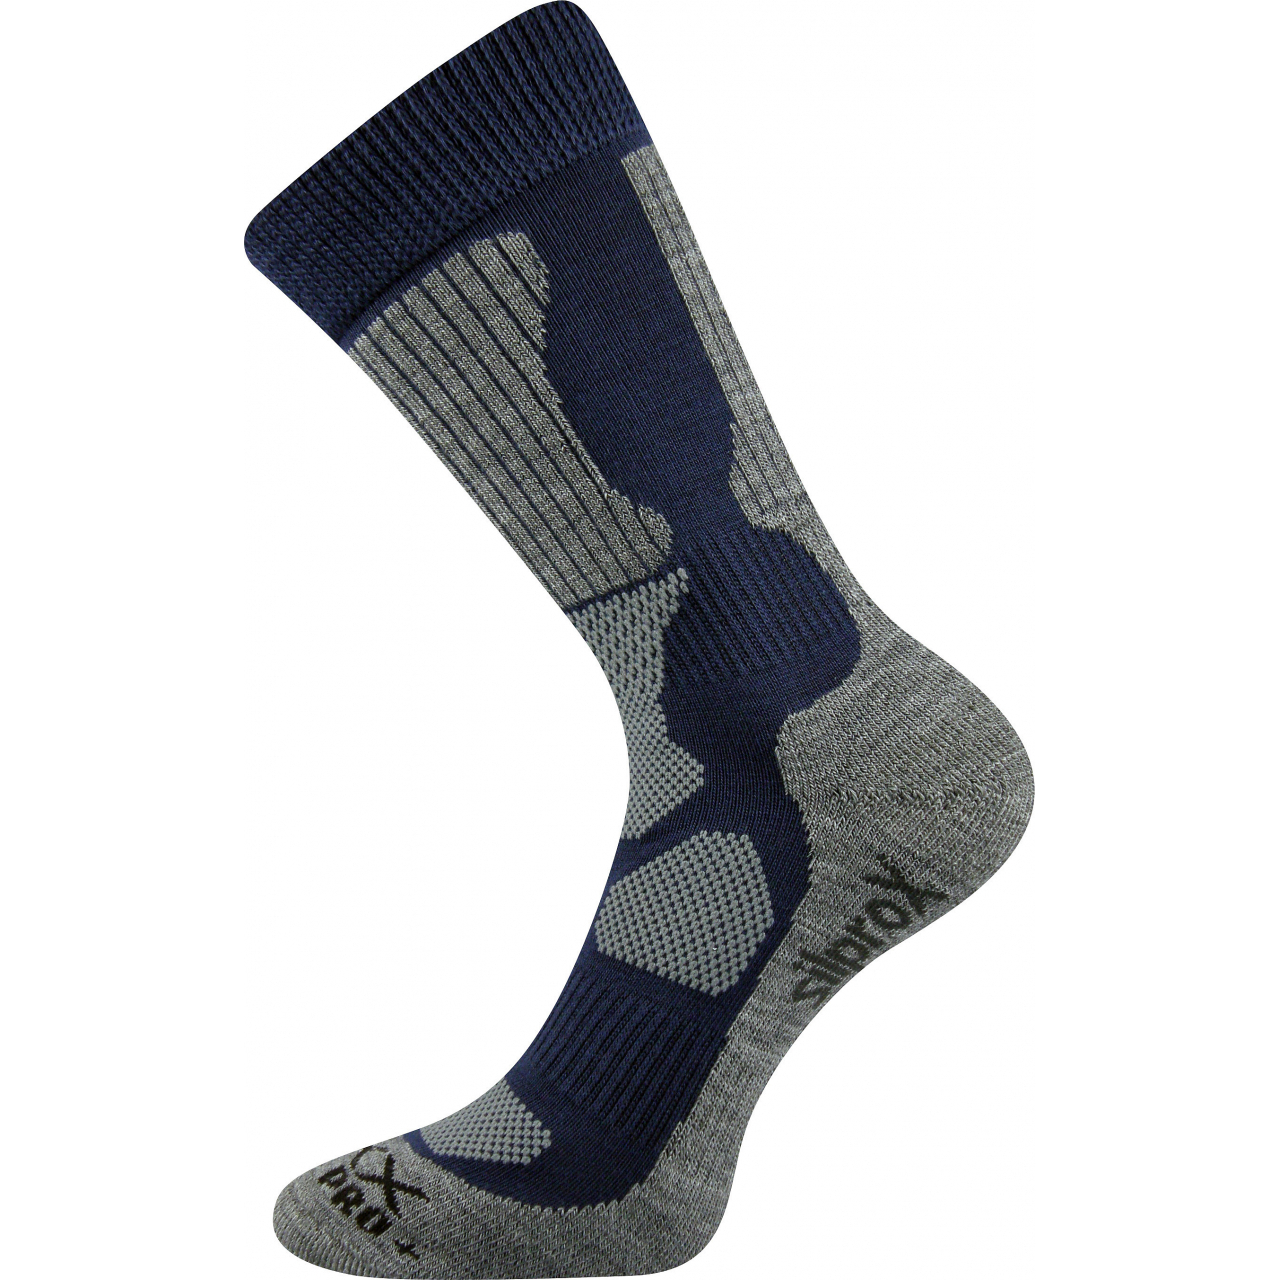 Ponožky sportovní Voxx Etrex - navy-šedé, 43-46